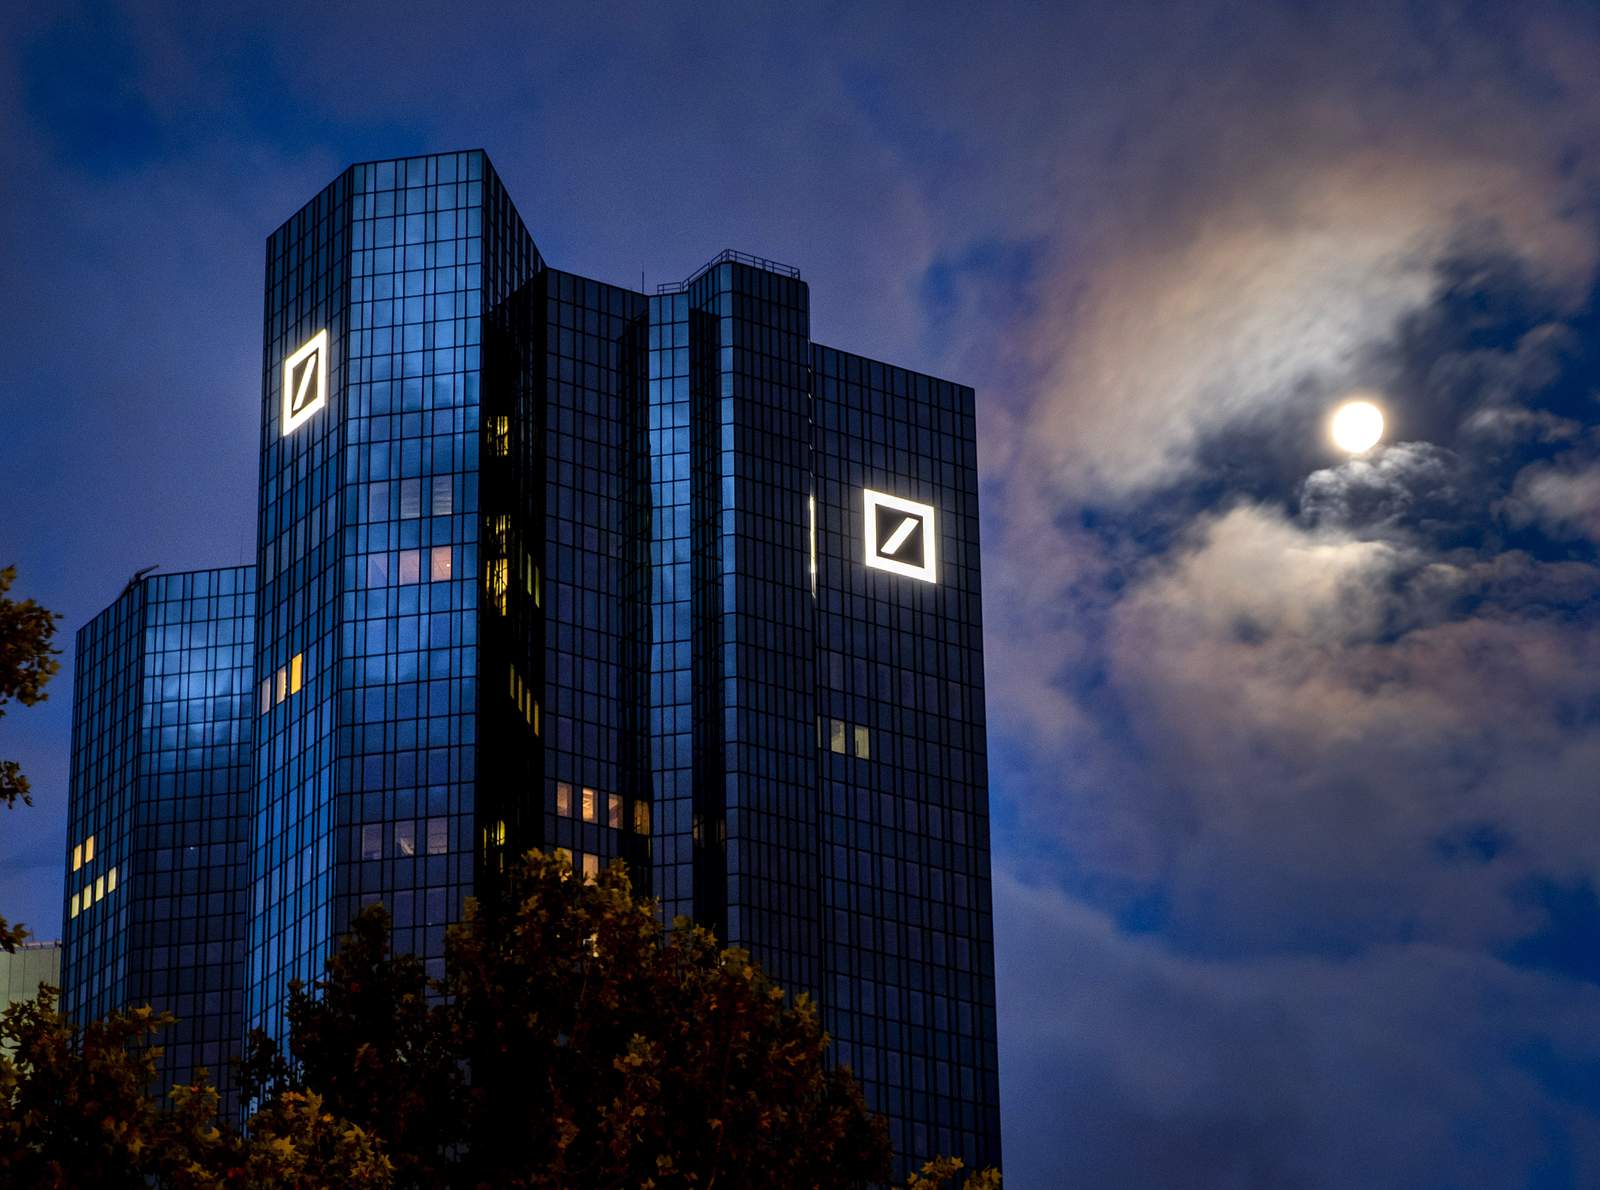 Deutsche Bank's return to financial health persists into Q3